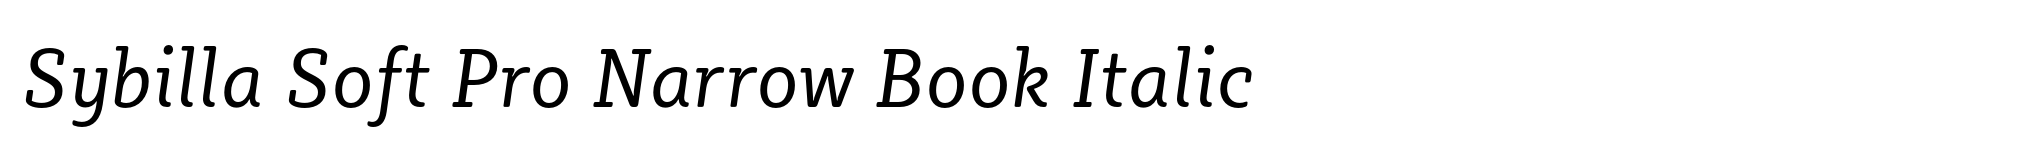 Sybilla Soft Pro Narrow Book Italic image